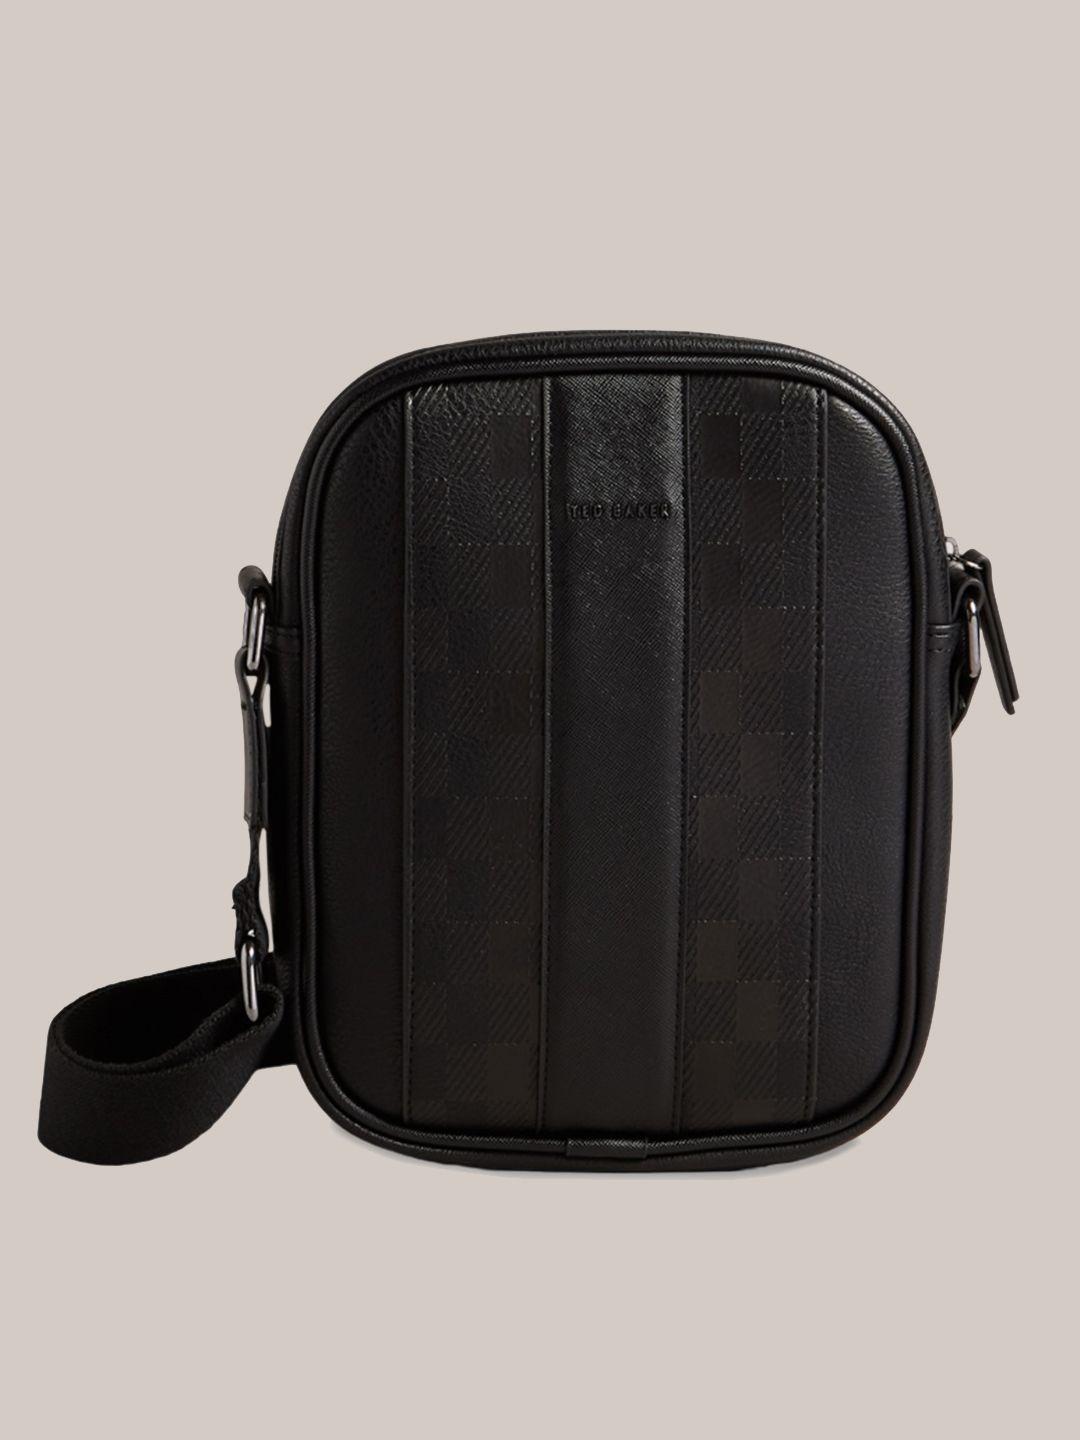 ted baker black textured pu oversized structured shoulder bag with tasselled